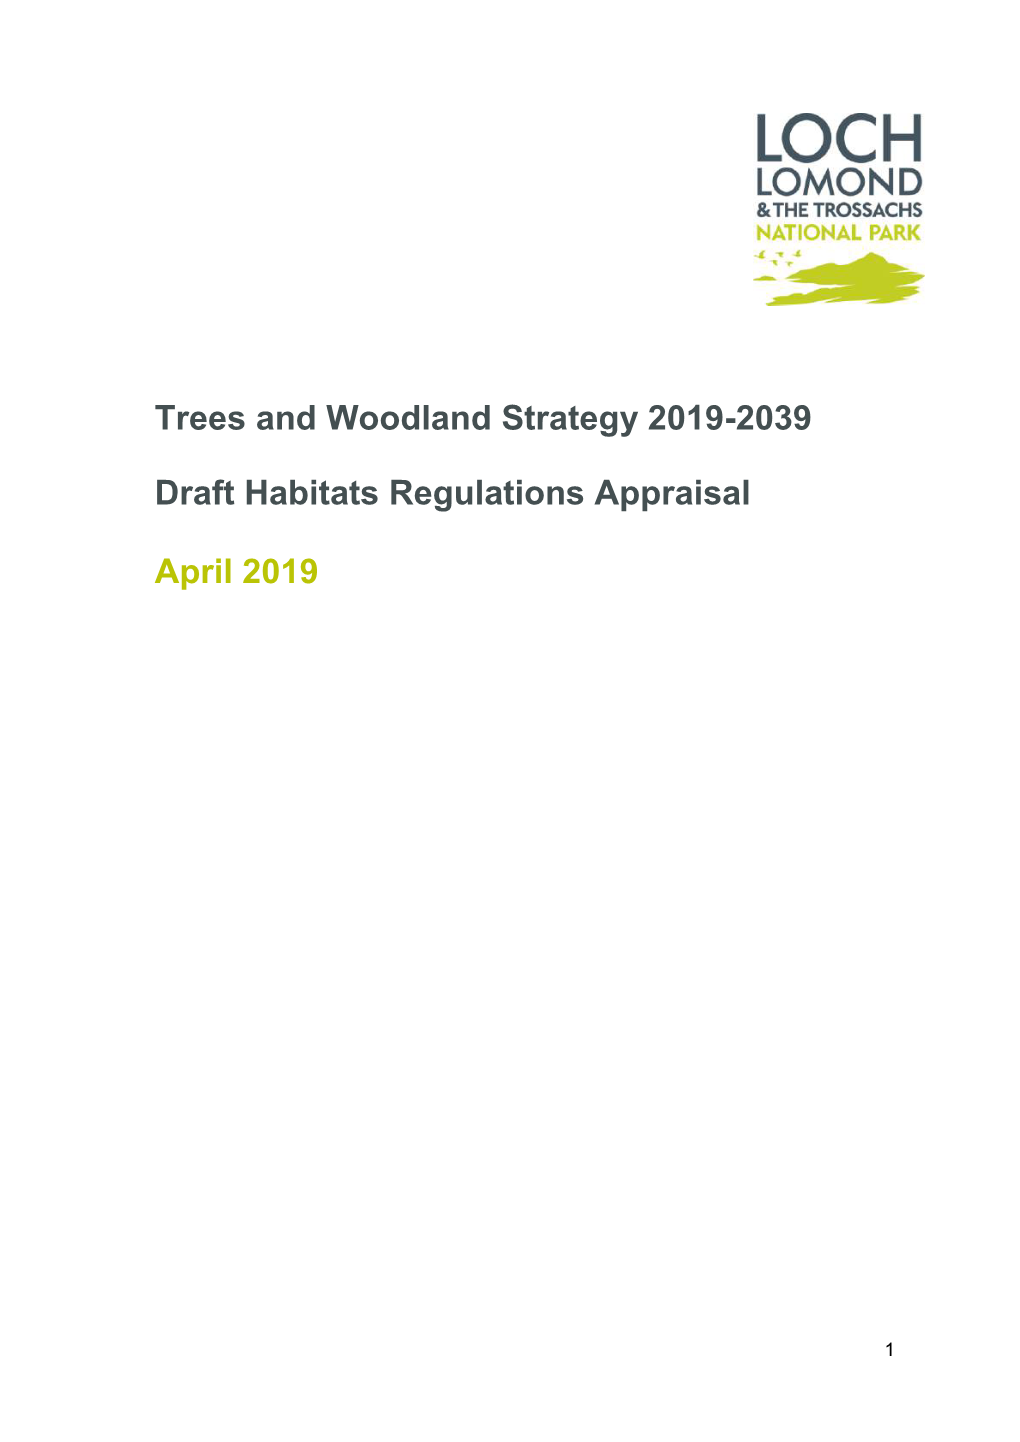 Trees and Woodland Strategy 2019-2039 Draft Habitats